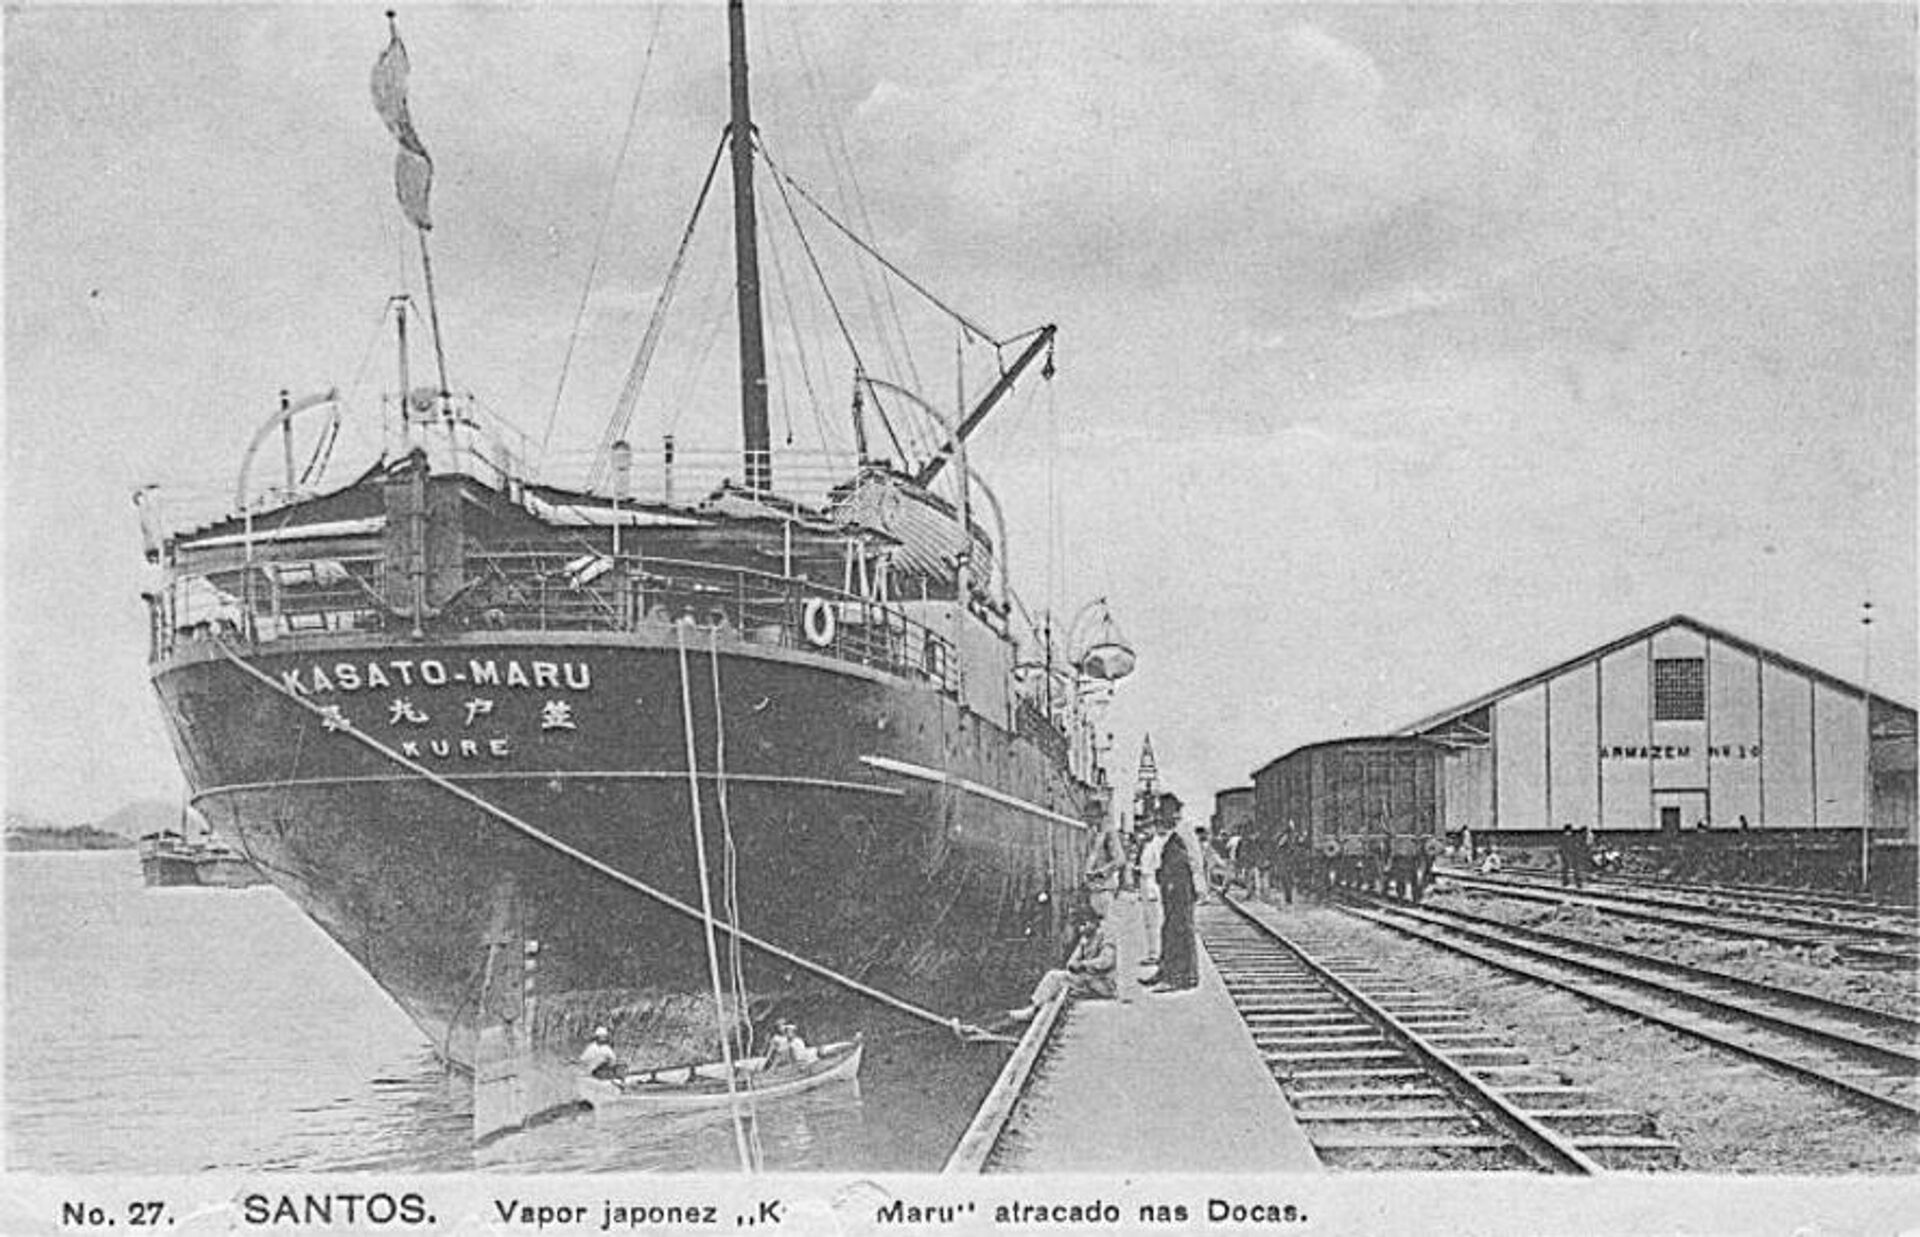 Корабль Касато Мару швартуется в порту Сантос для высадки первых японских иммигрантов в Бразилии, 1908 год - Sputnik 日本, 1920, 11.01.2023